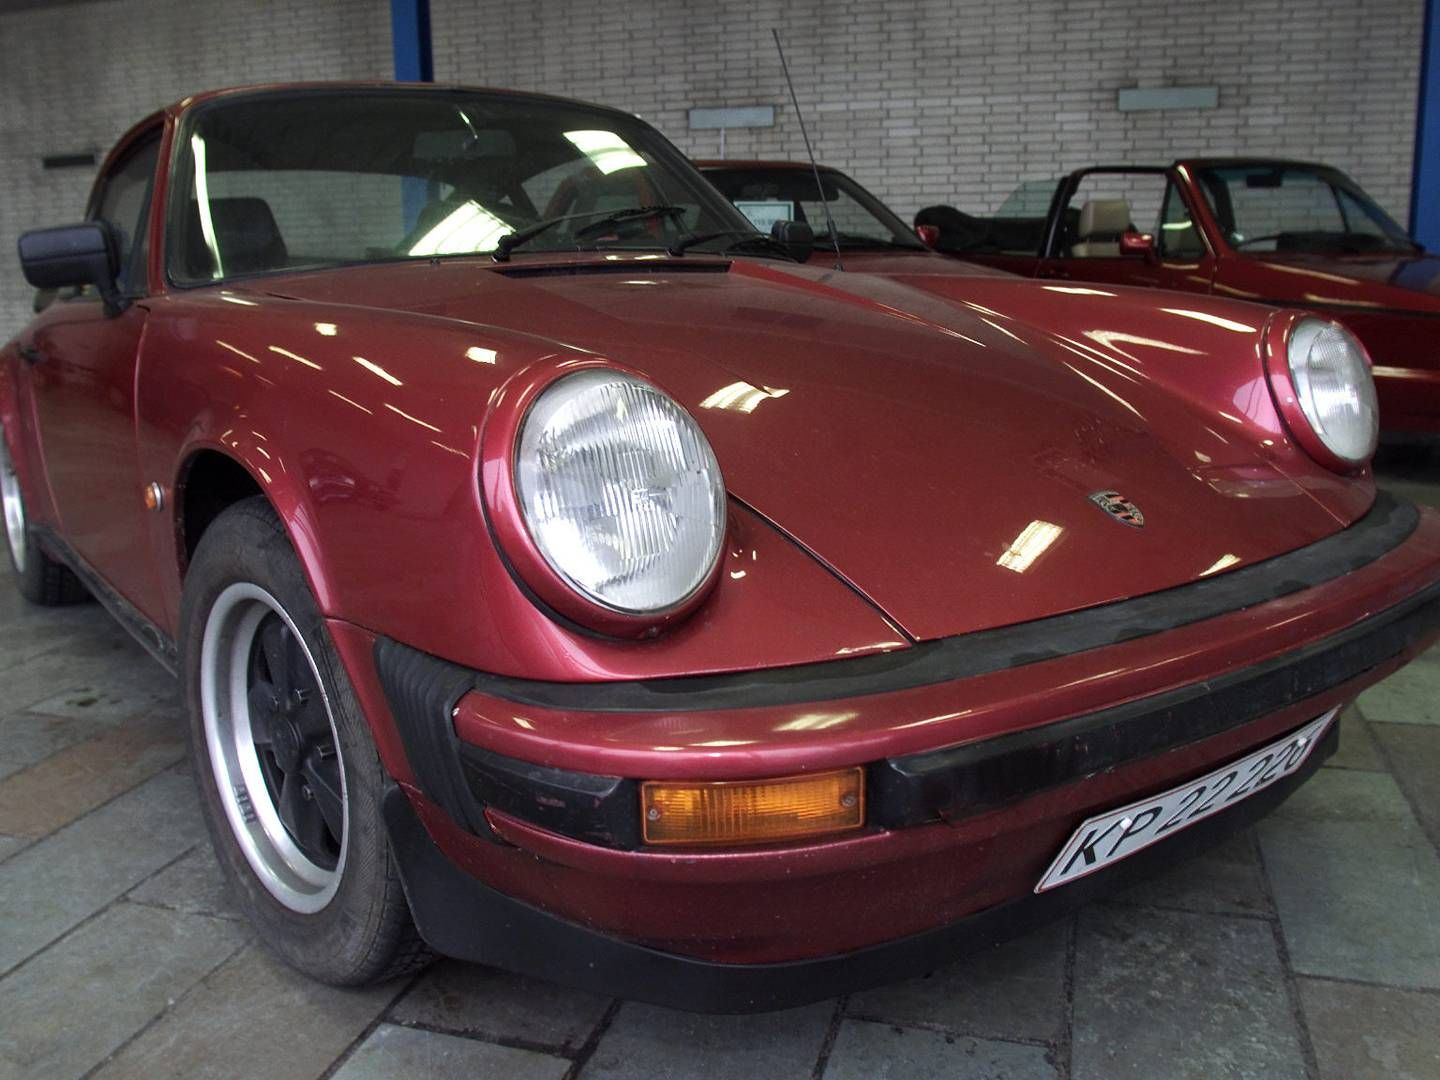 Martin Bech Pedersen, der ejer Euro 2000, har bl.a. en stor samling af Porsche-biler. På billedet ses en Porche 911 fra 1966, der så vidt vides ikke ejes af Martin Bech Pedersen. | Foto: Toke Hage